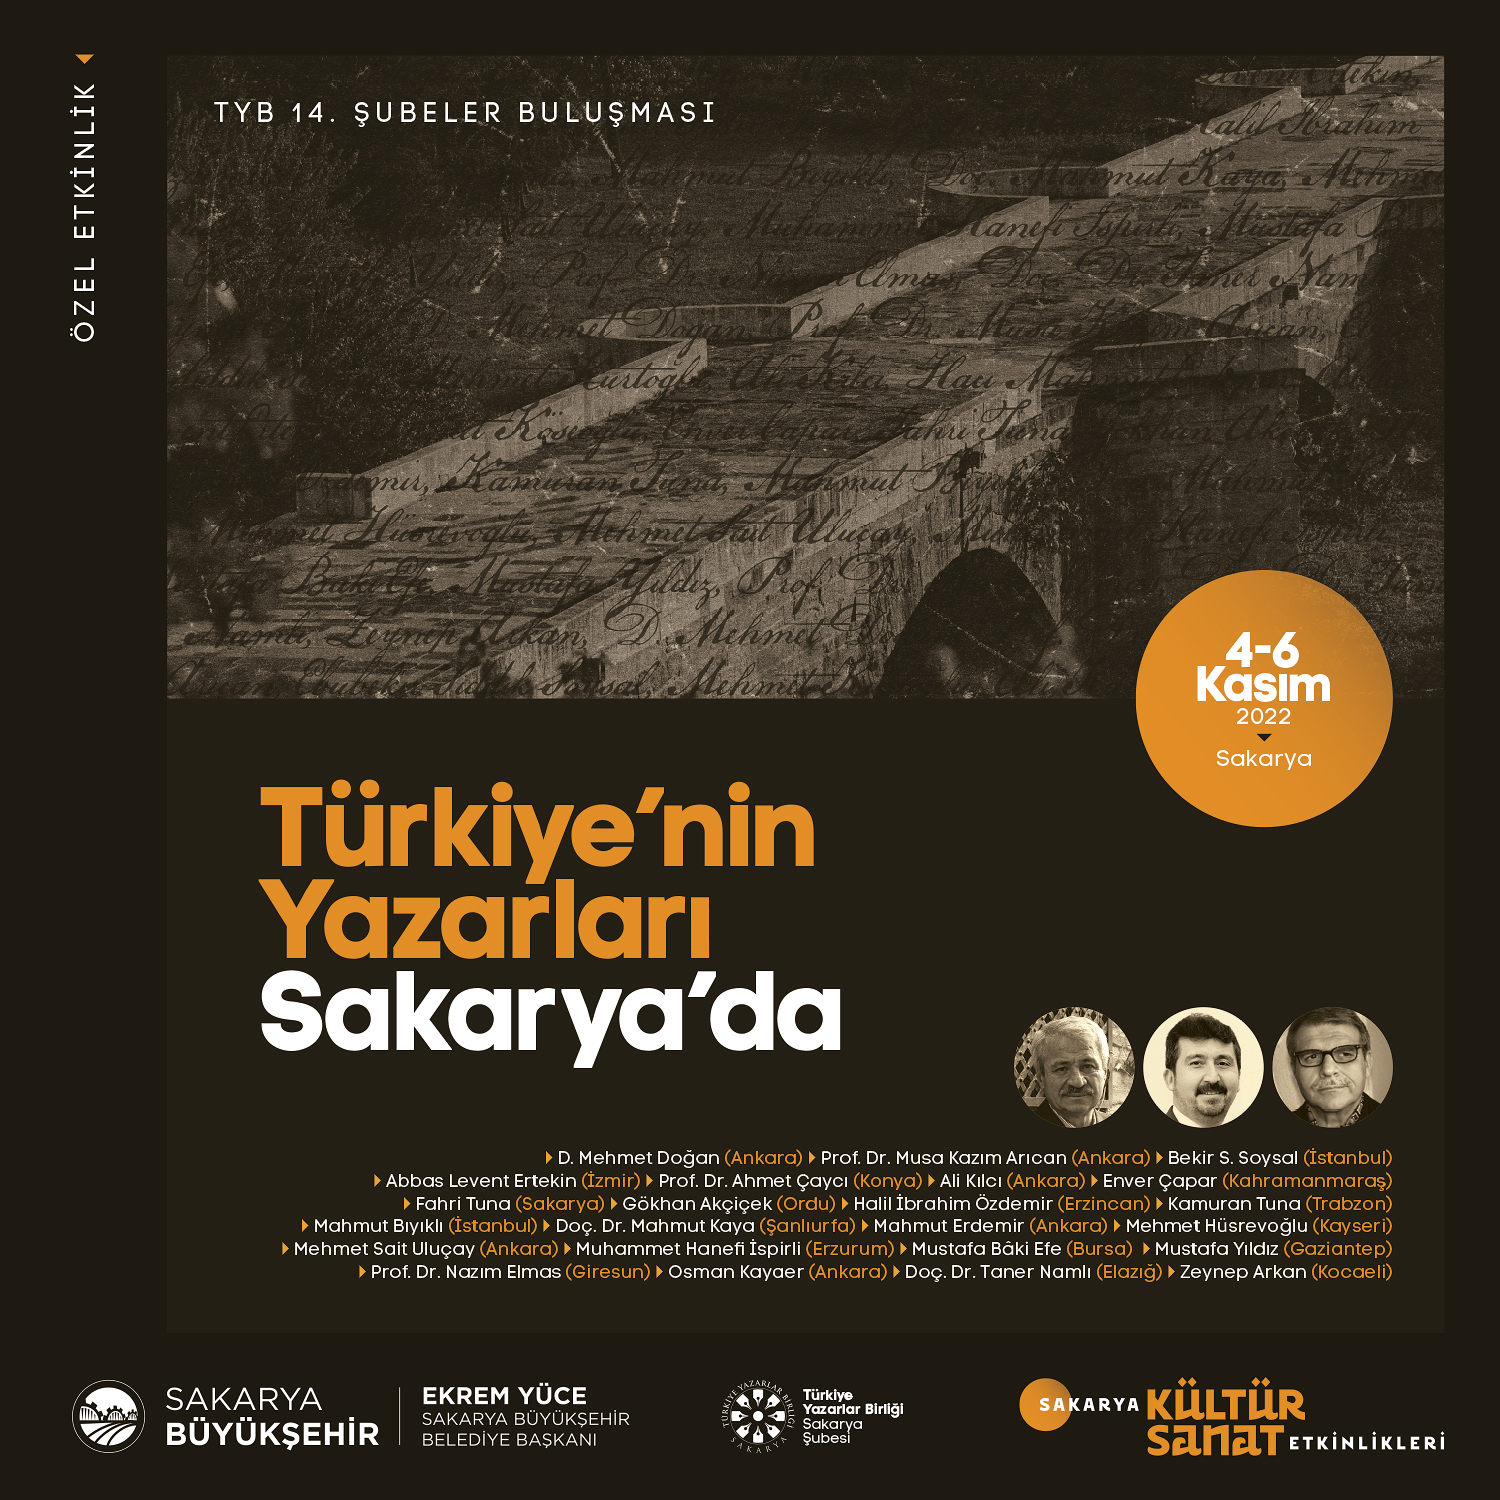 Türkiye’nin Yazarları Sakarya’da: 7 farklı bölgeden 23 şair ve yazar geliyor